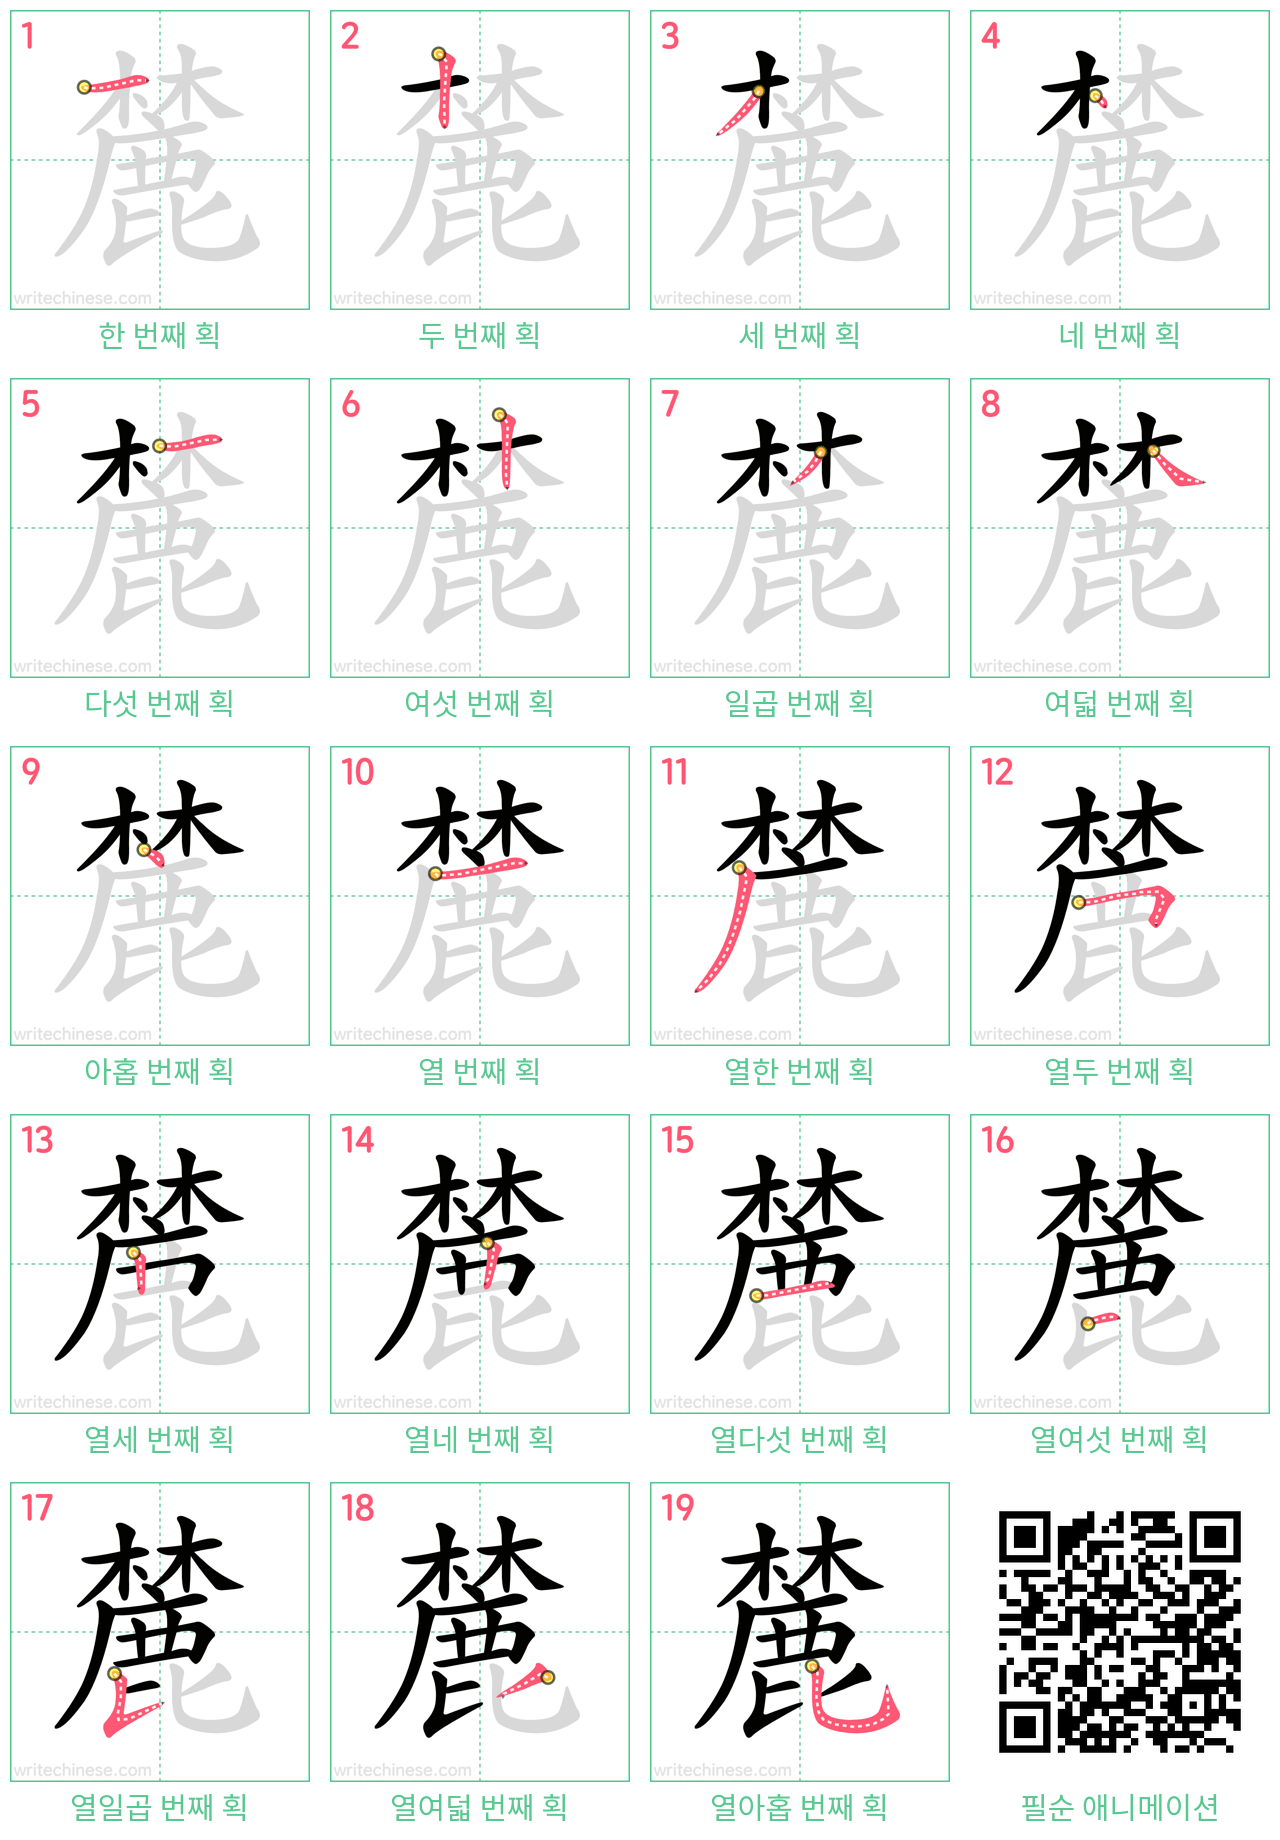 麓 step-by-step stroke order diagrams